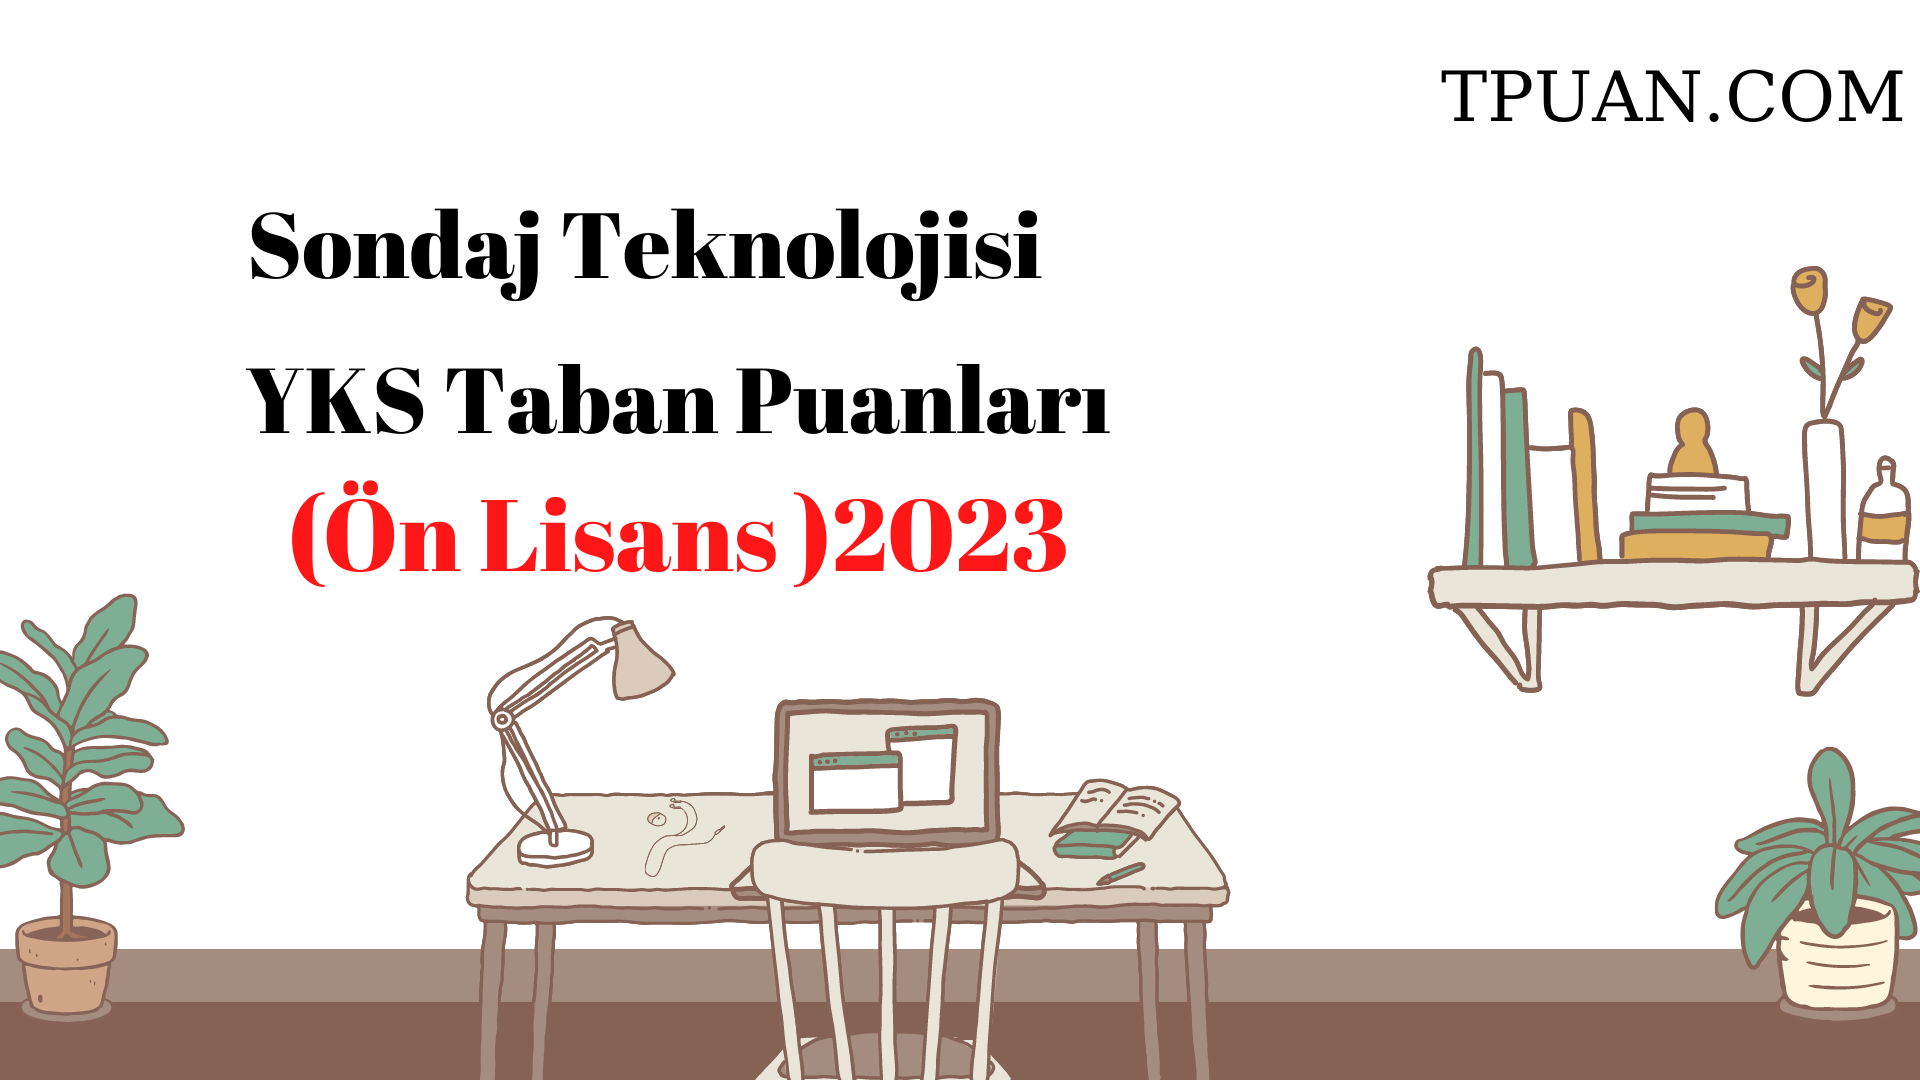  Sondaj Teknolojisi Bölümü YKS Taban Puanları (2 Yıllık) 2023